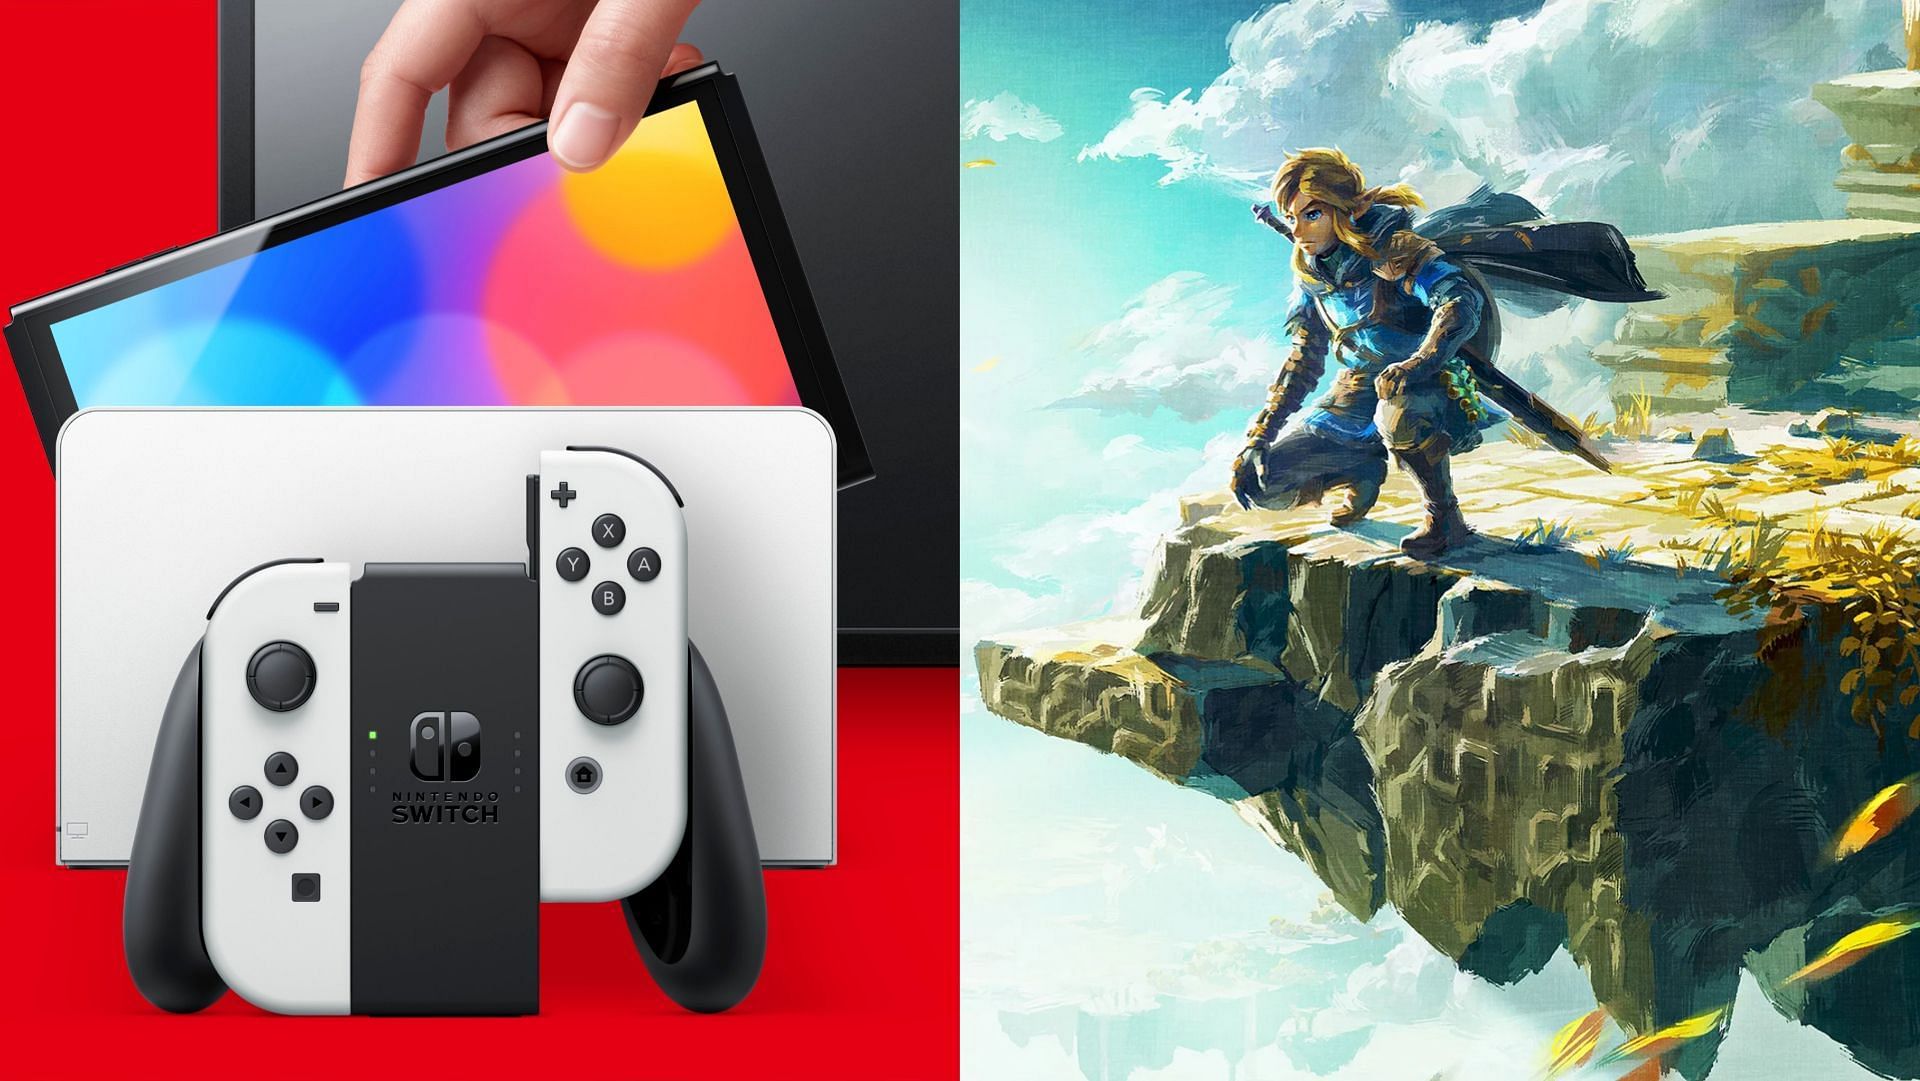 Solformørkelse periskop Dare The Legend of Zelda: Tears of the Kingdom OLED Switch leaked images spark  release date rumors